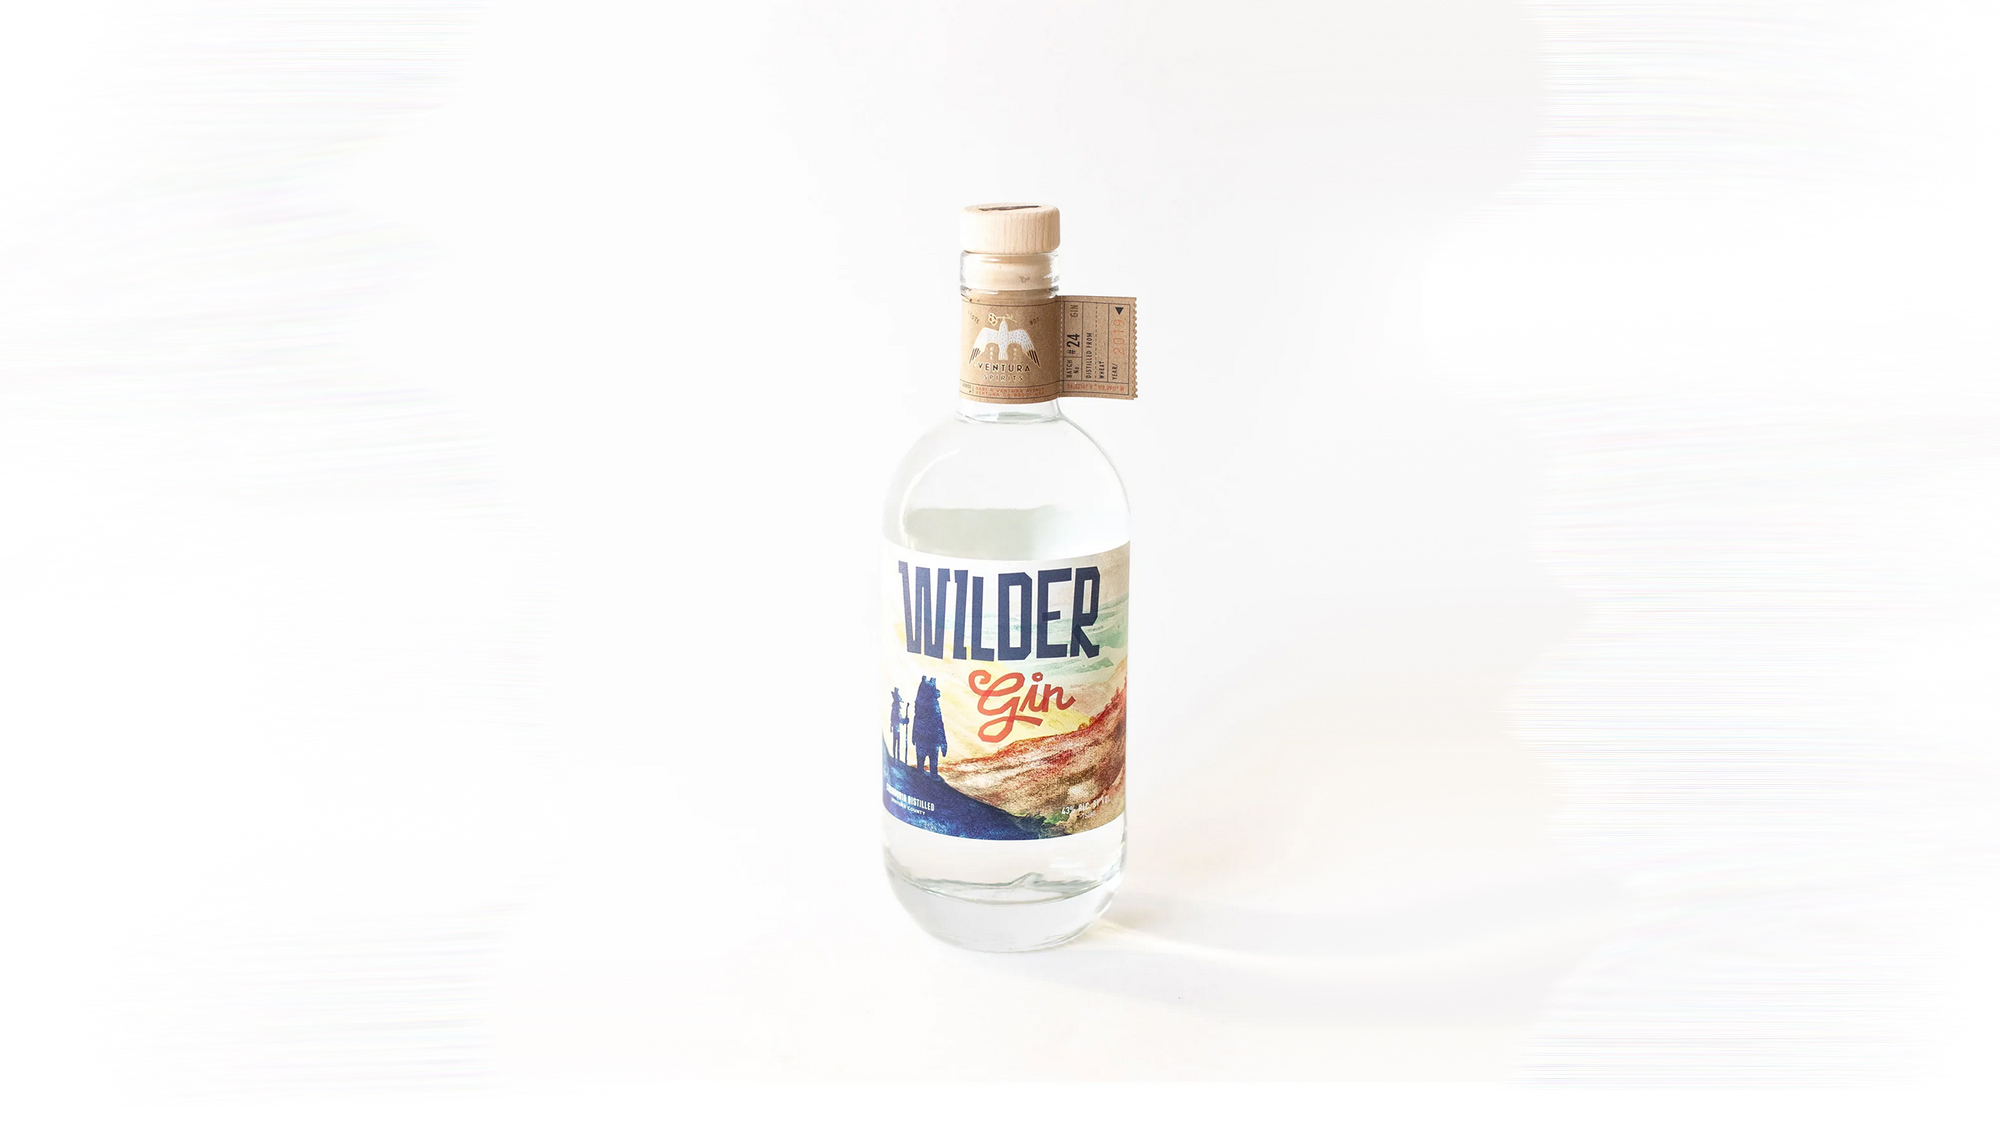 Ventura Wilder Gin